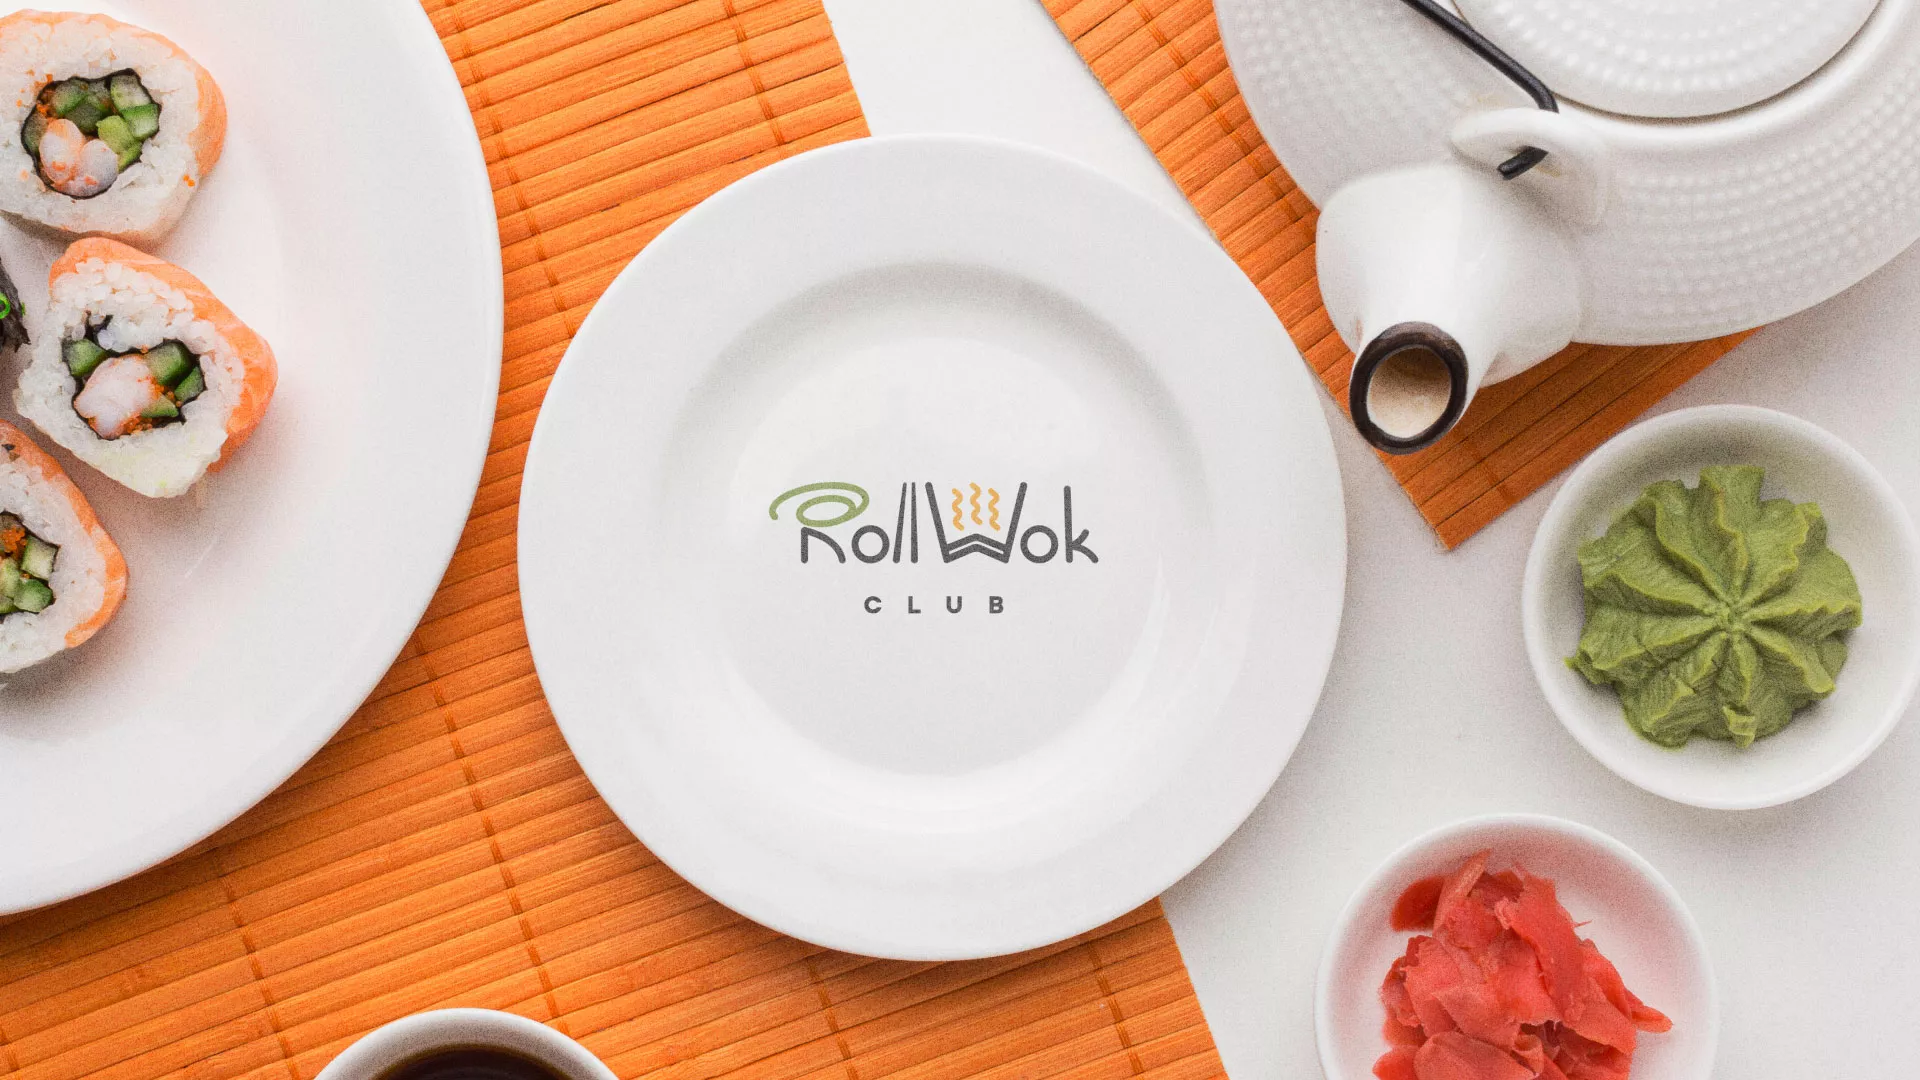 Разработка логотипа и фирменного стиля суши-бара «Roll Wok Club» в Фурманове